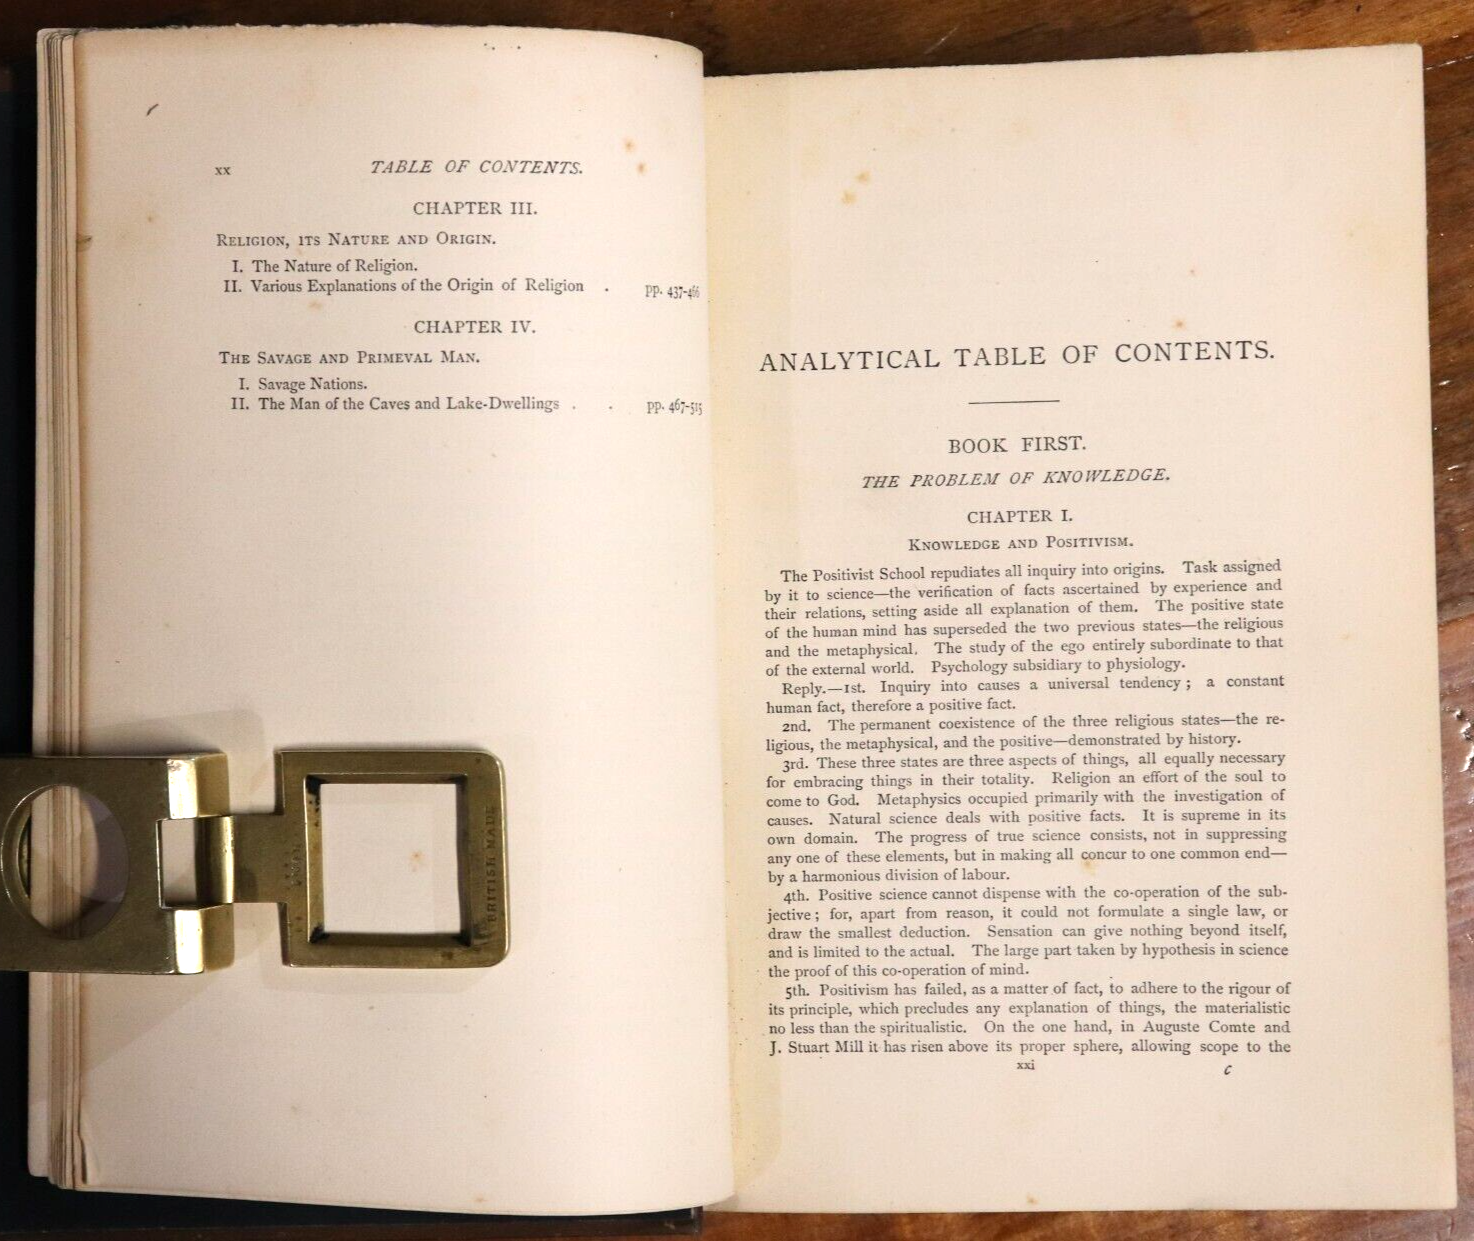 1883 A Study Of Origins by E De Pressense' 1st Edition Antique Theology Book - 0